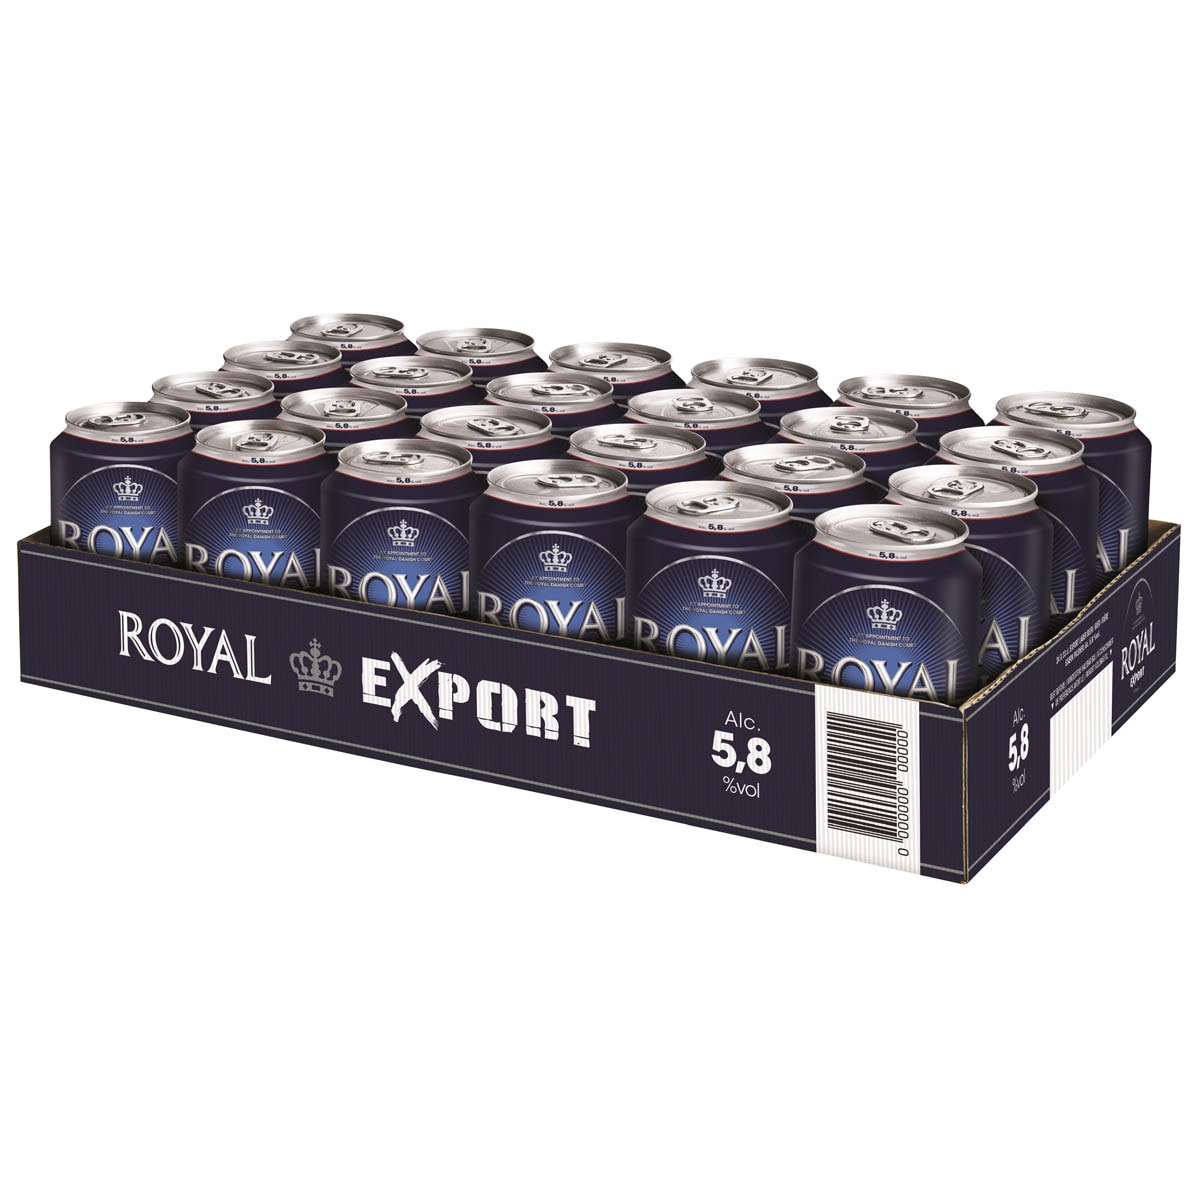 Royal Export